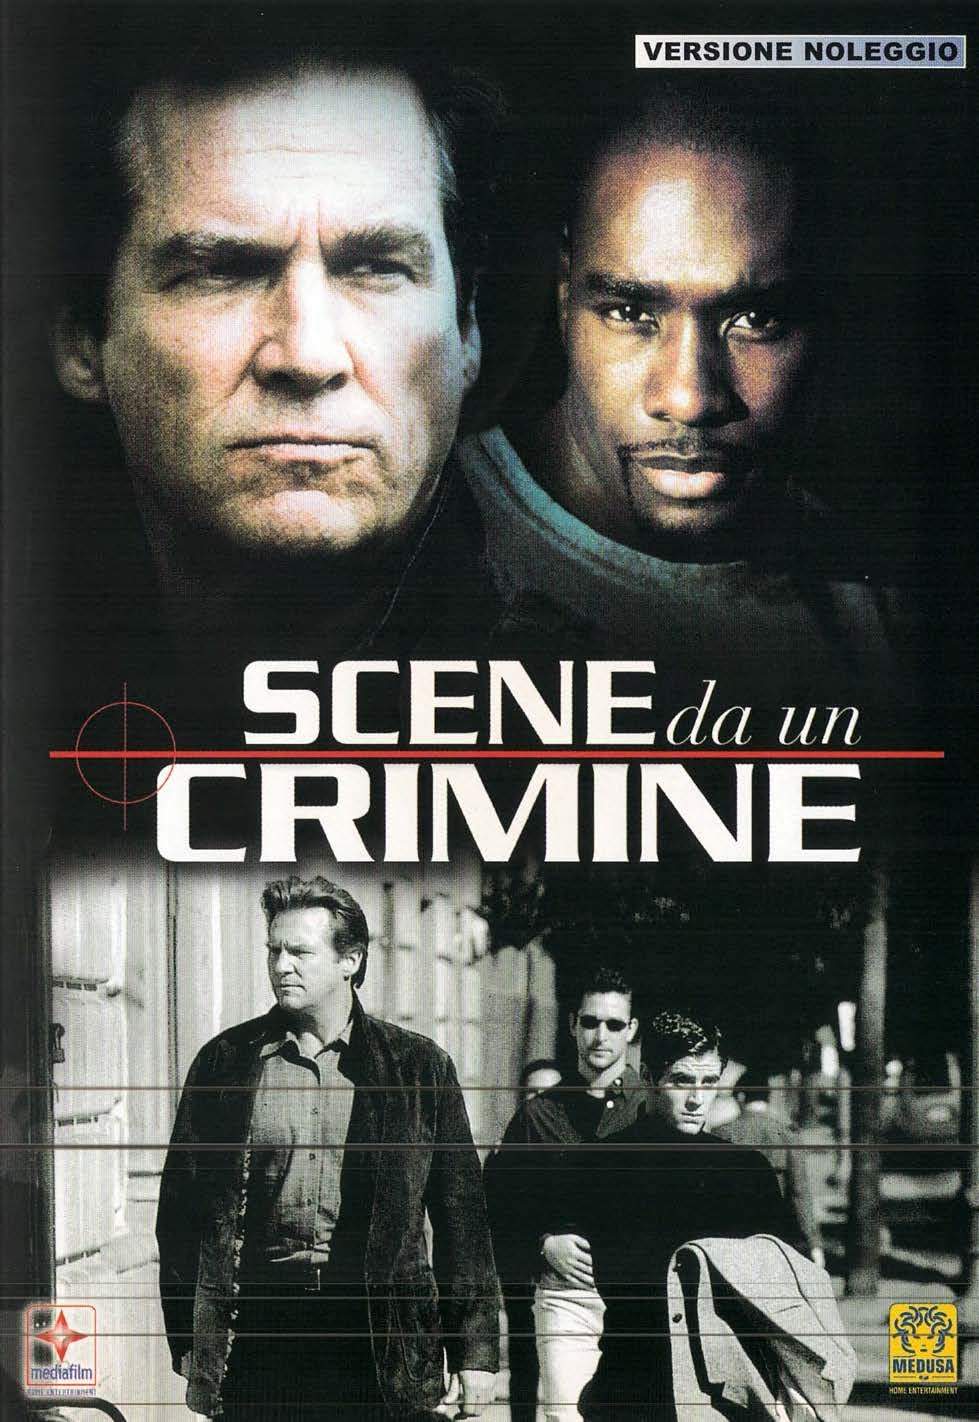 SCENE DA UN CRIMINE -B59- ***USATO***